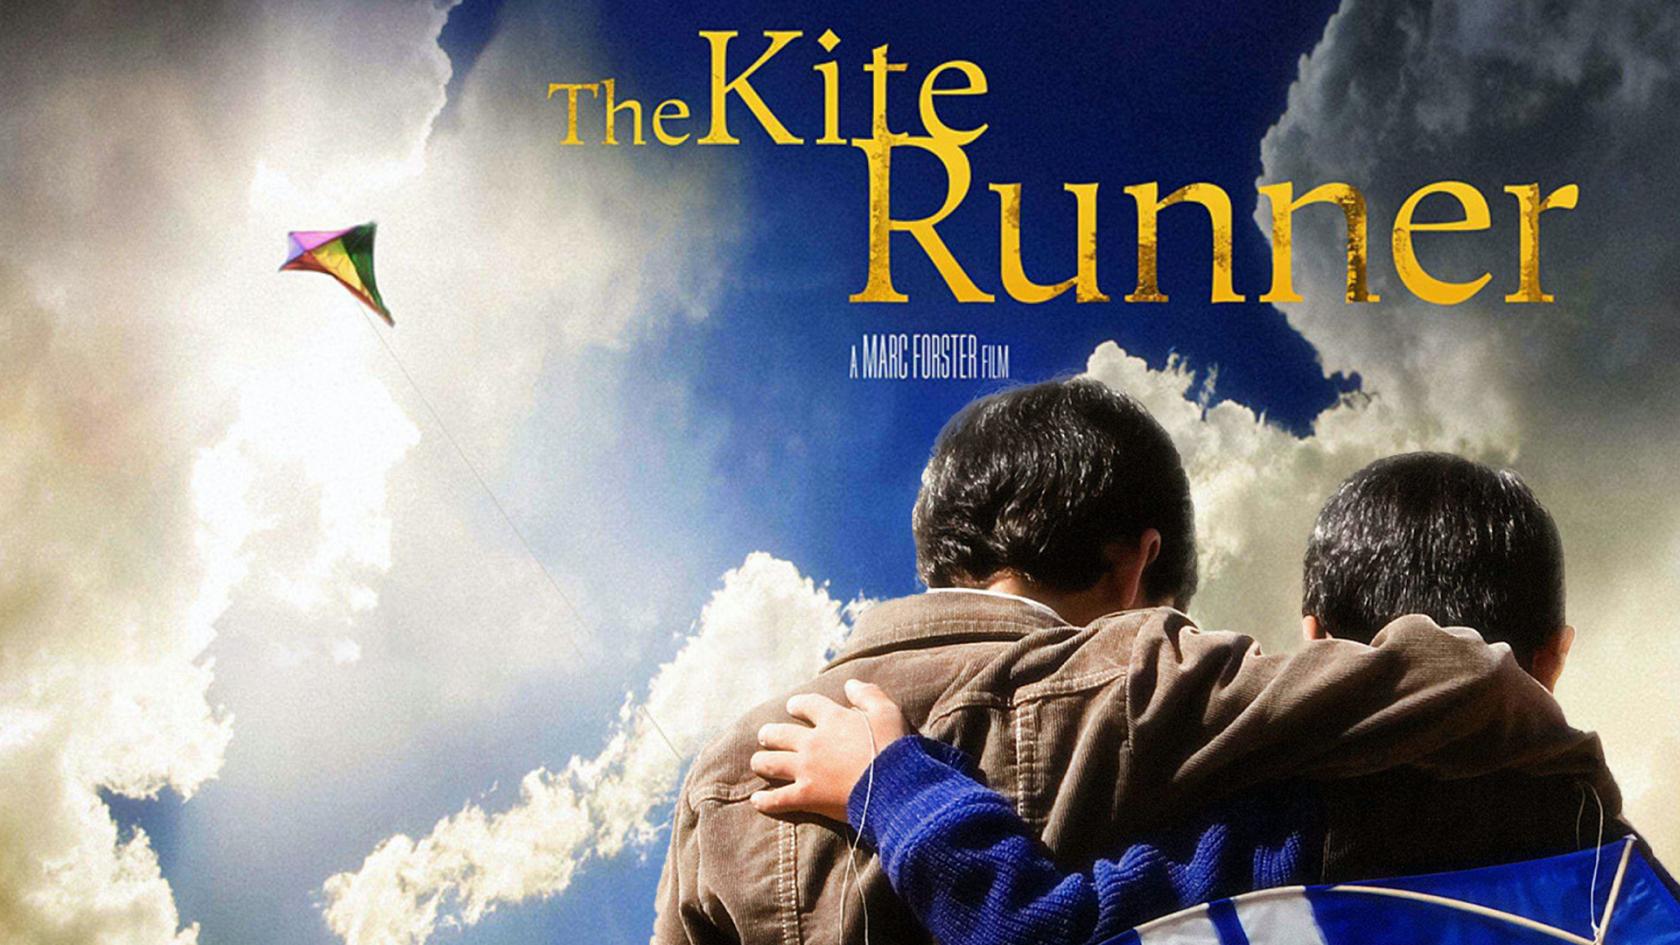 the kite runner movie online